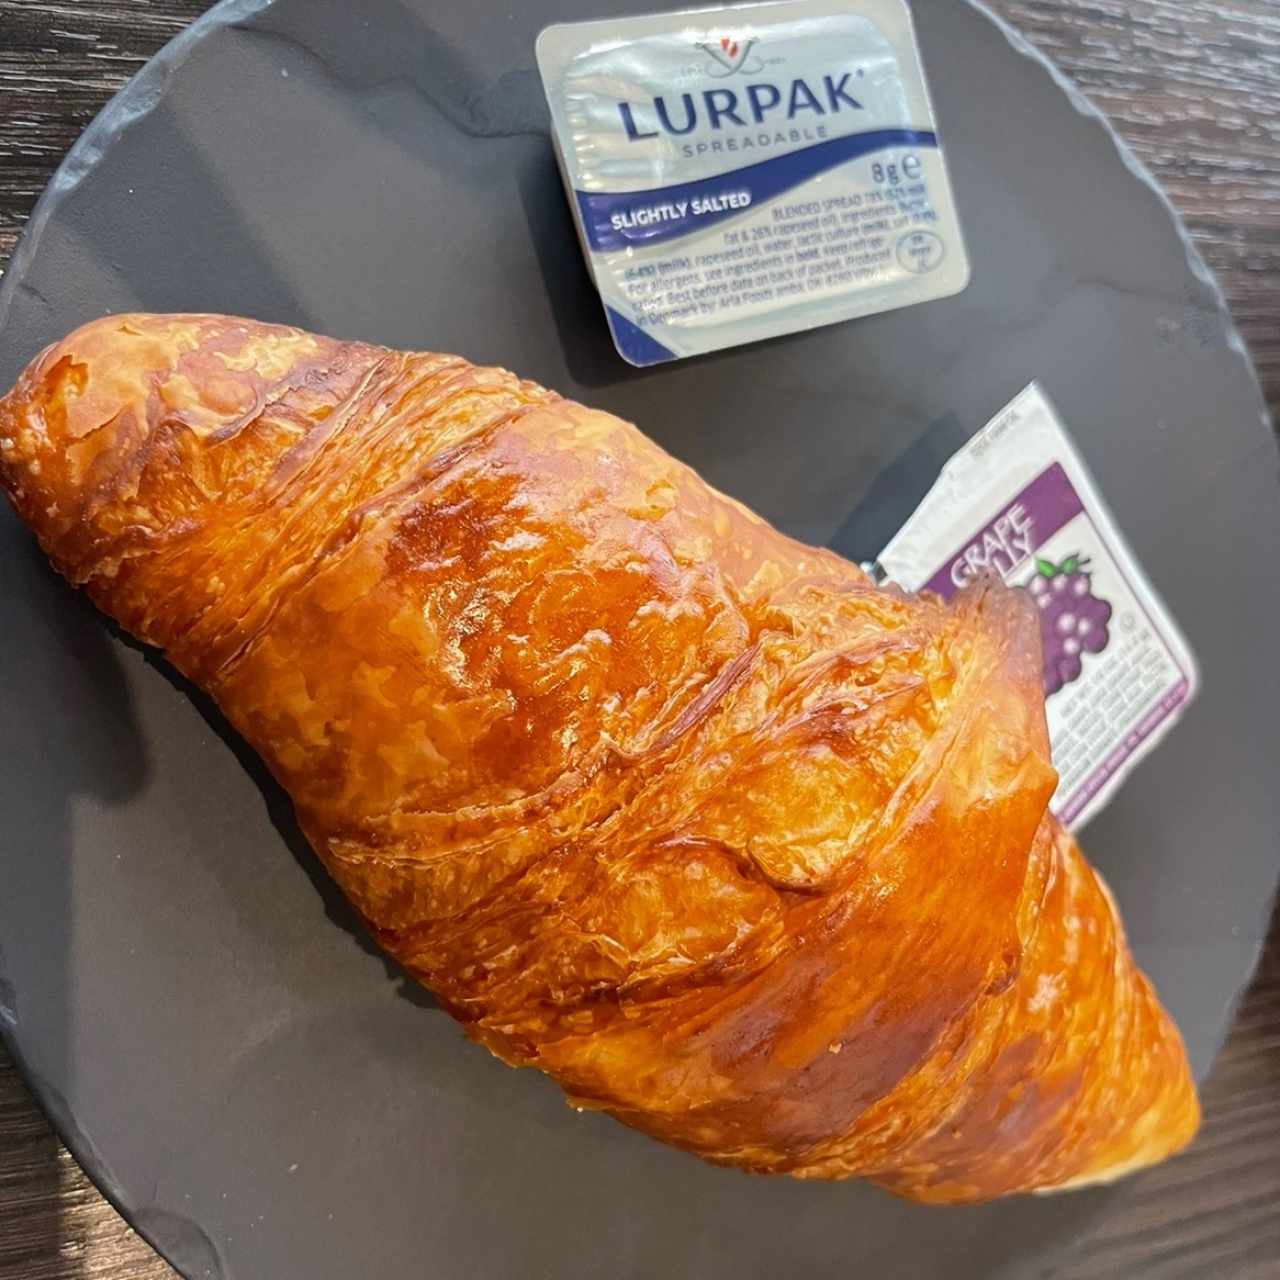 Desayunos - Croissant Plain